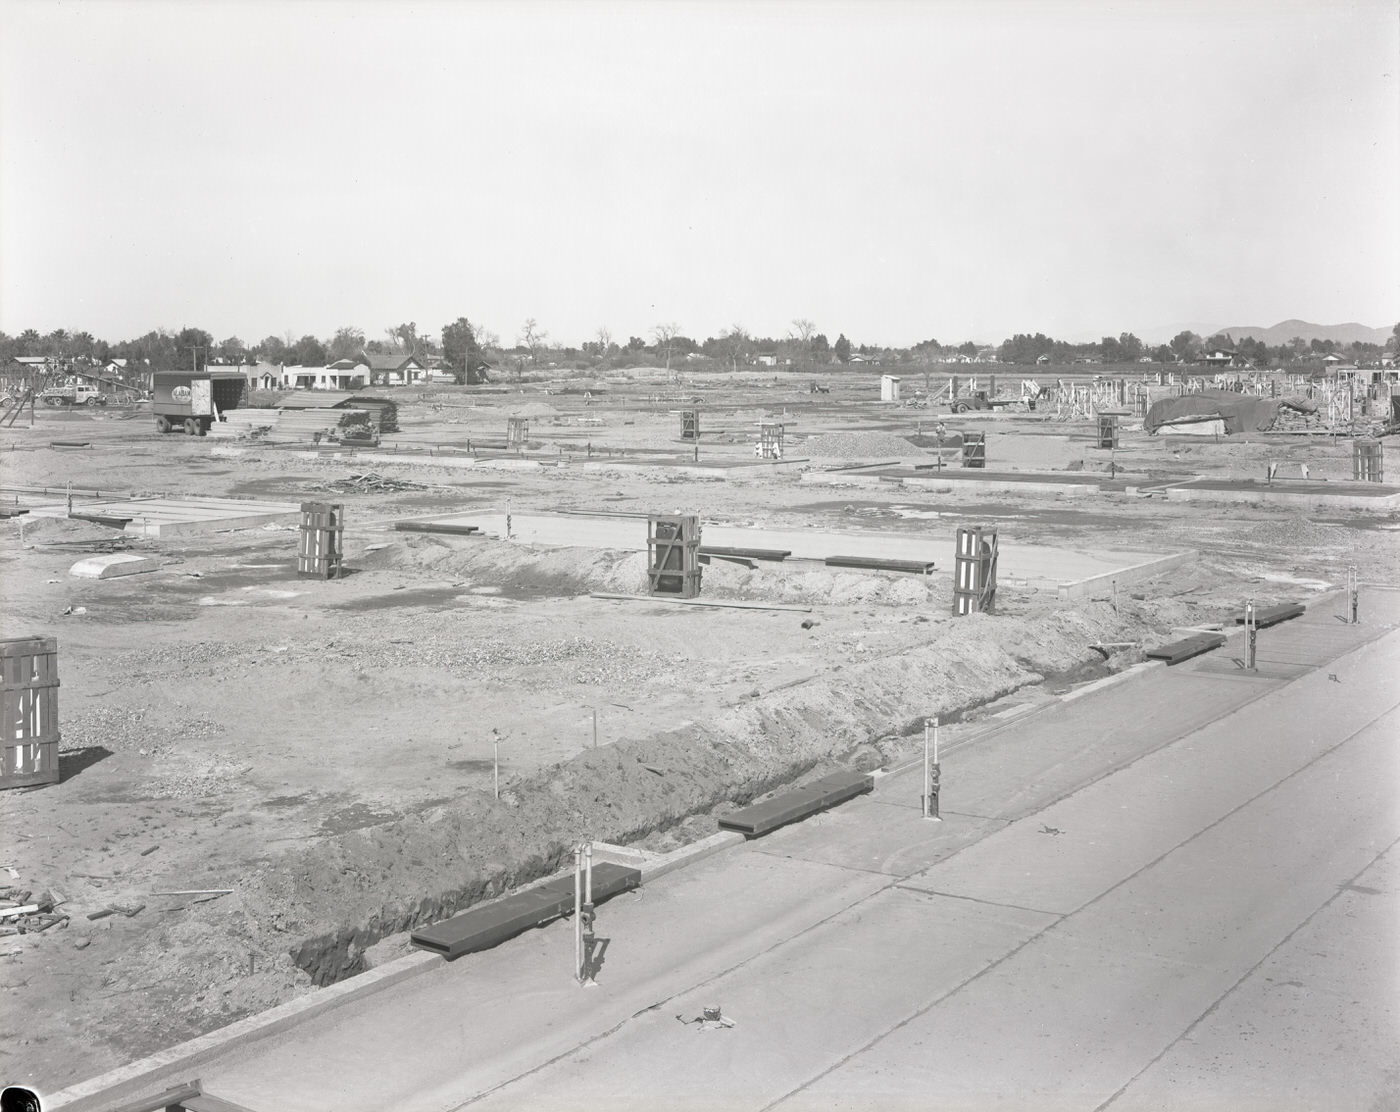 E. W. Duhame Construction Company Site, 1941